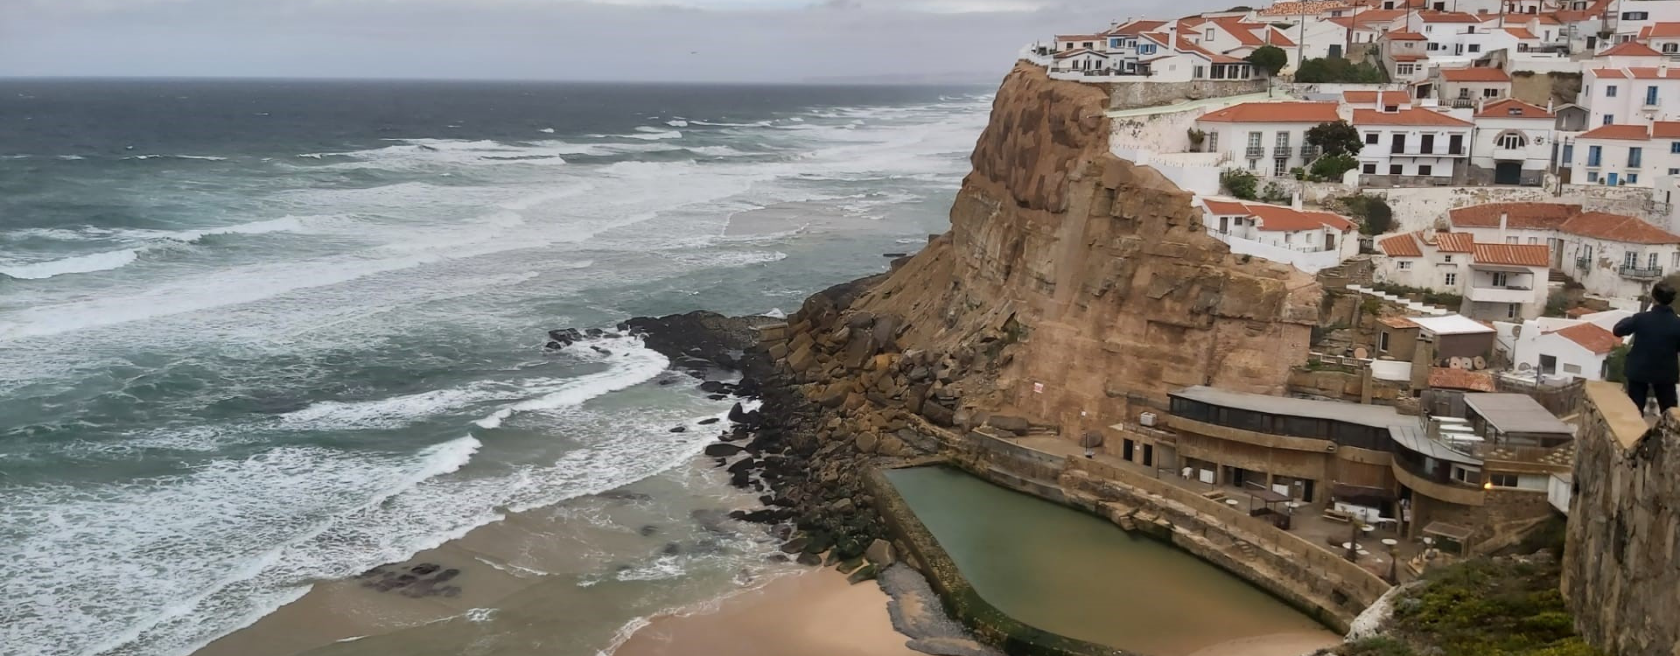 Minimização do risco nas arribas das praias do Magoito, Azenhas do Mar e S. Julião